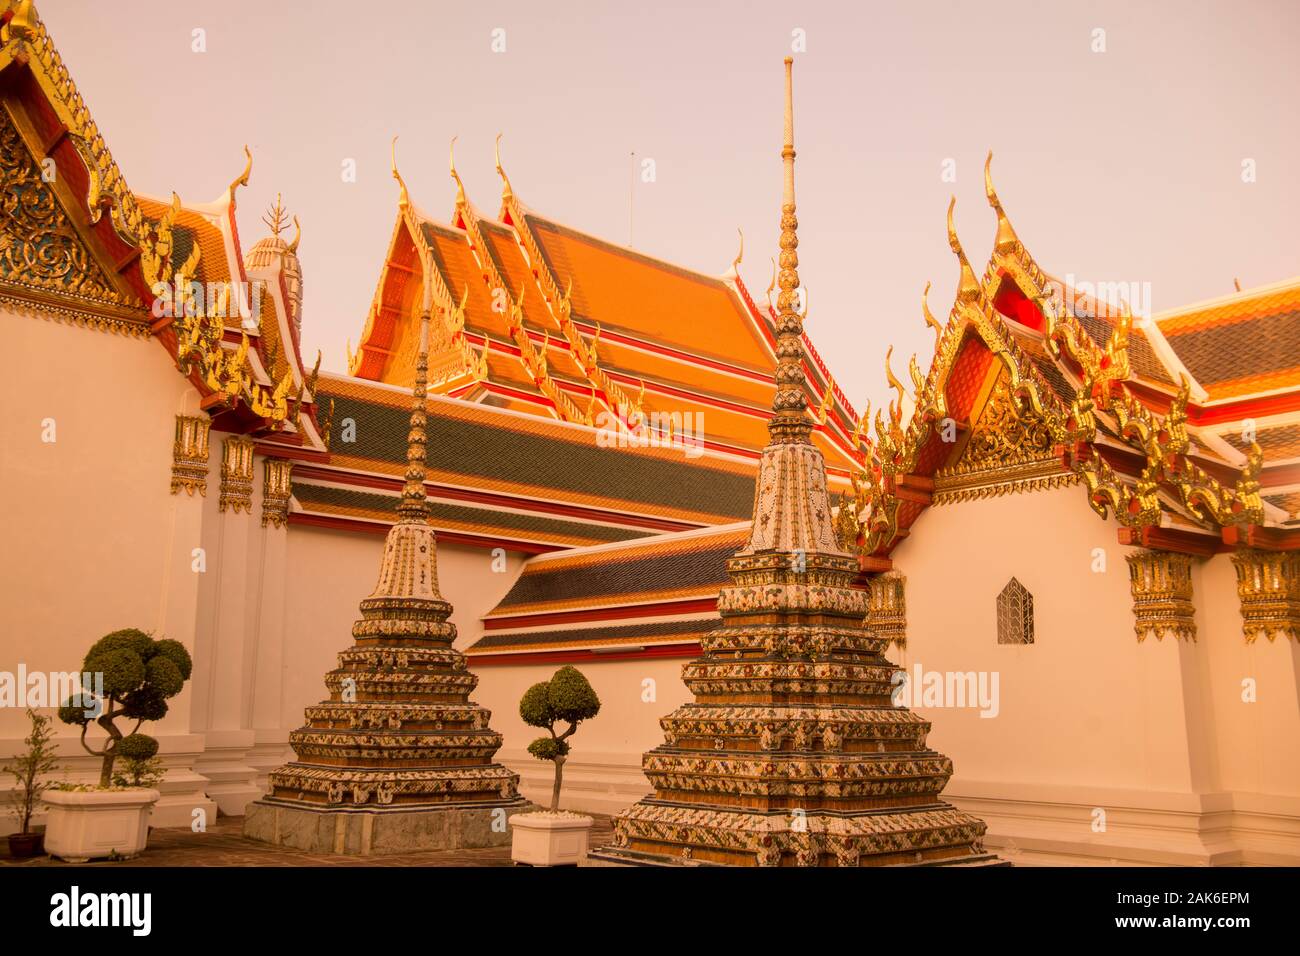 Le Wat Pho à la ville de Bangkok en Thaïlande en Asie Southest. Thaïlande, Bangkok, novembre, 2019 Banque D'Images